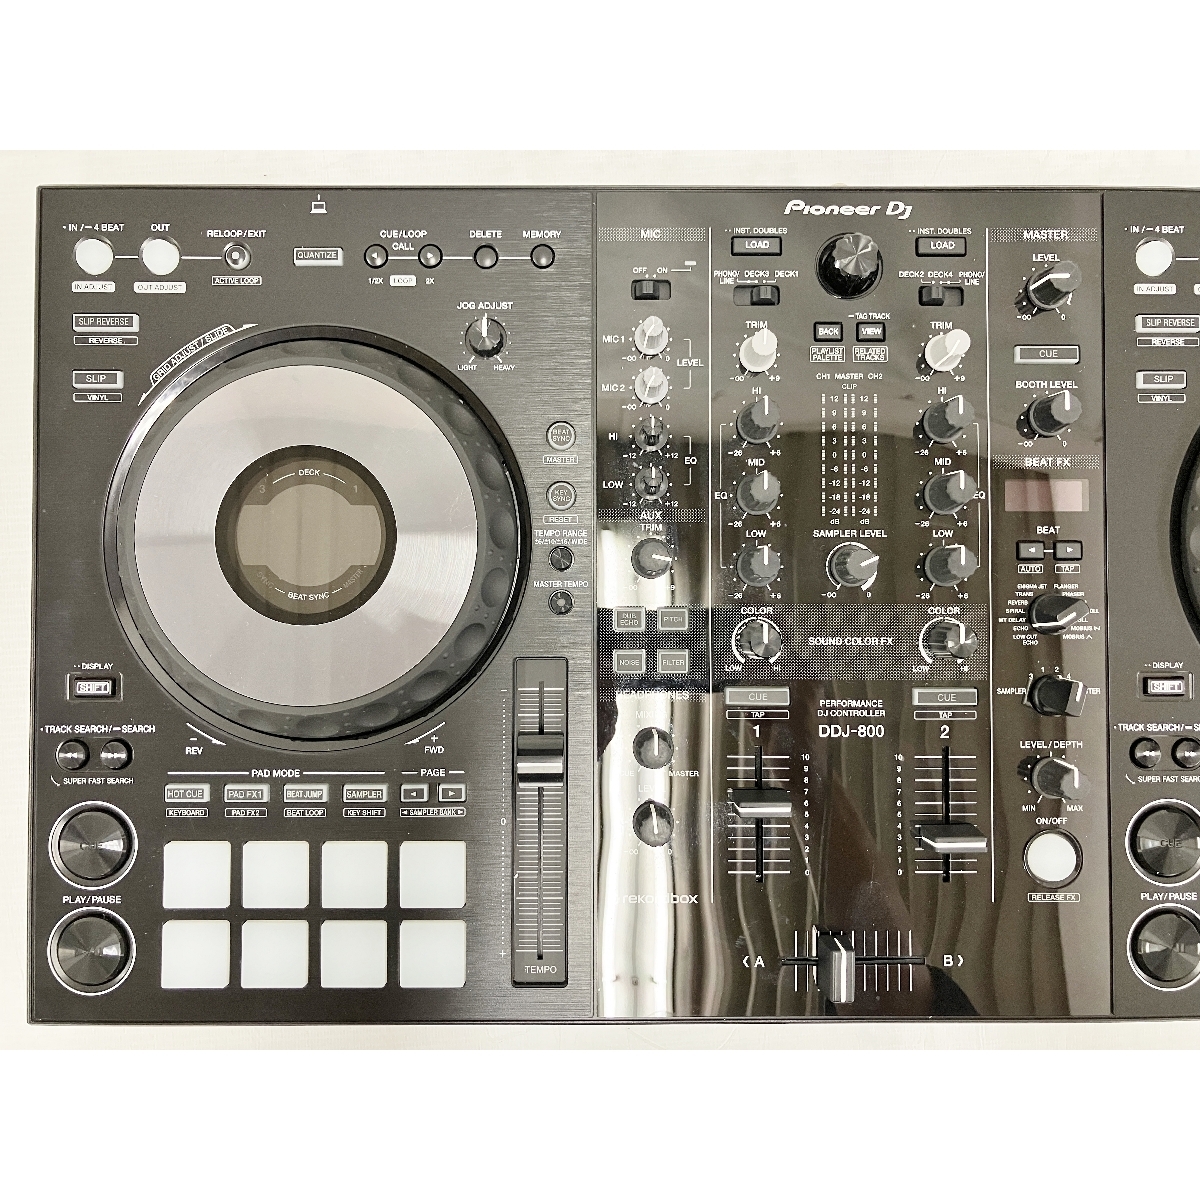 [ гарантия работы ]Pioneer DDJ-800 Performance DJ контроллер 2022 год производства акустическое оборудование б/у T8804595